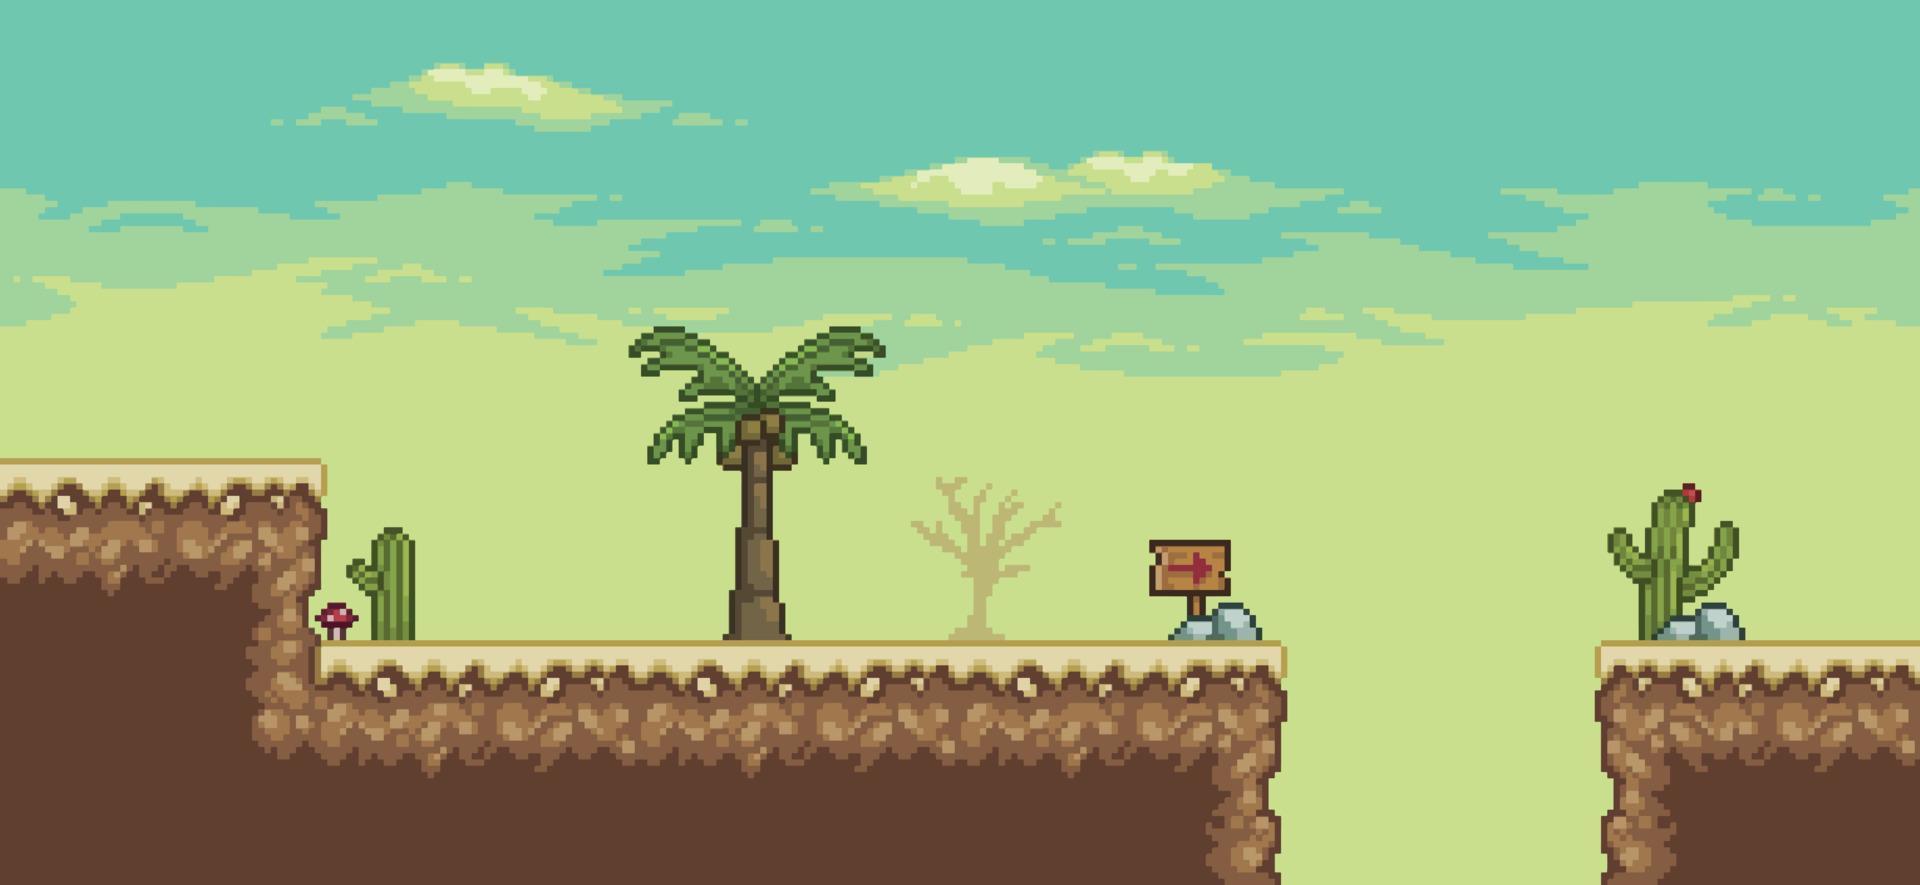 escena de juego del desierto de pixel art con palmera, cactus, vector de fondo de 8 bits